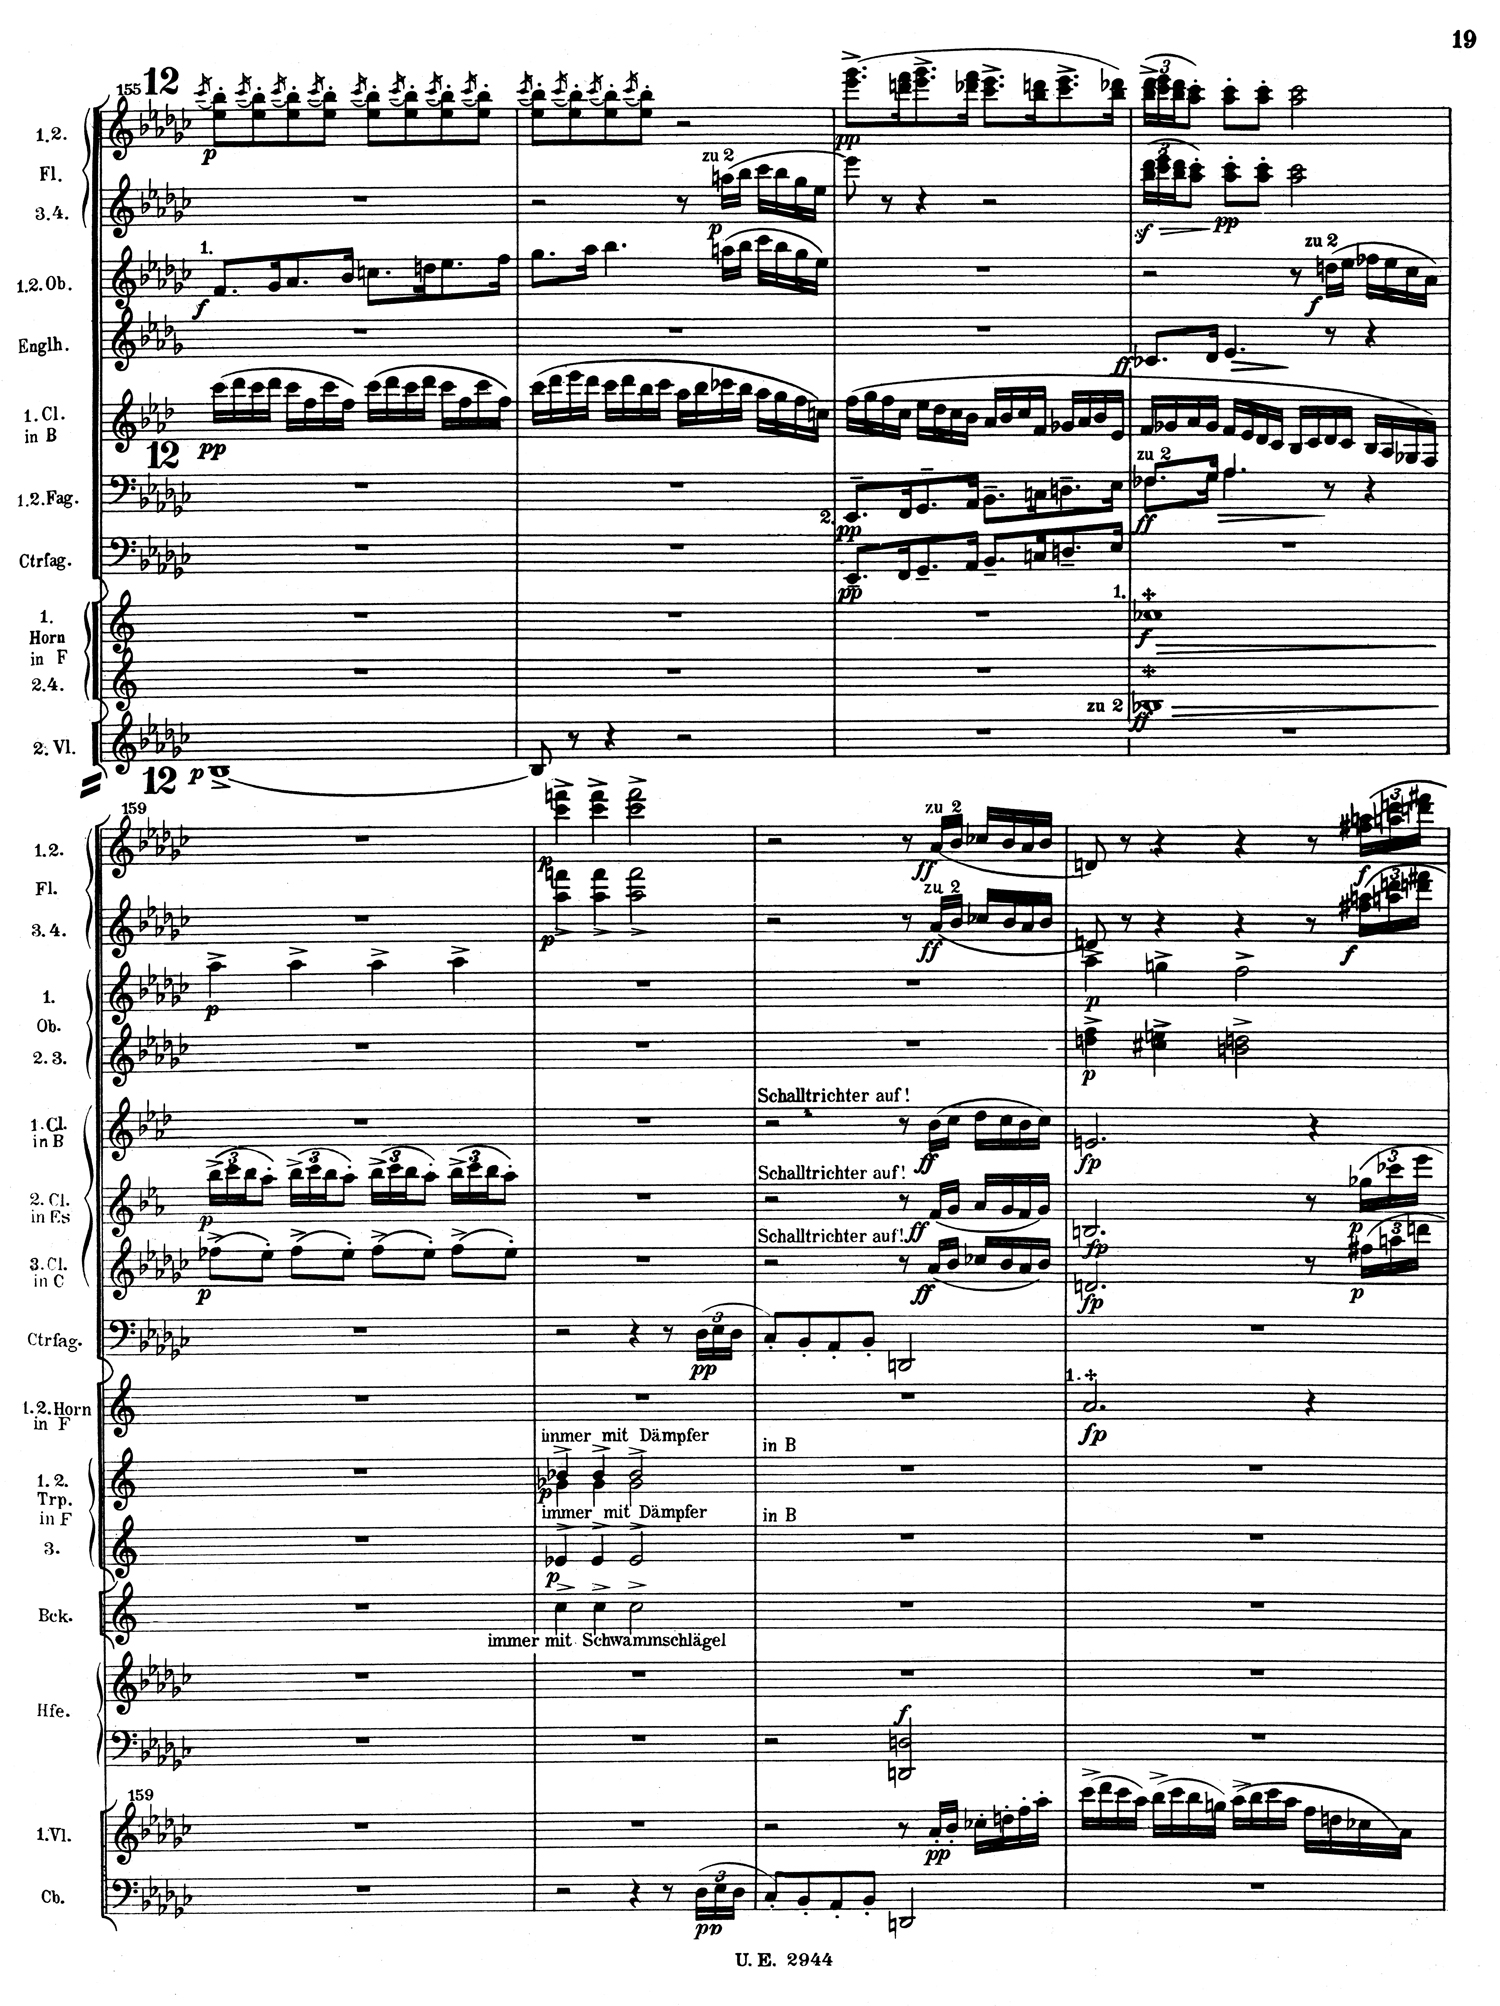 Mahler 4 Score 3.jpg